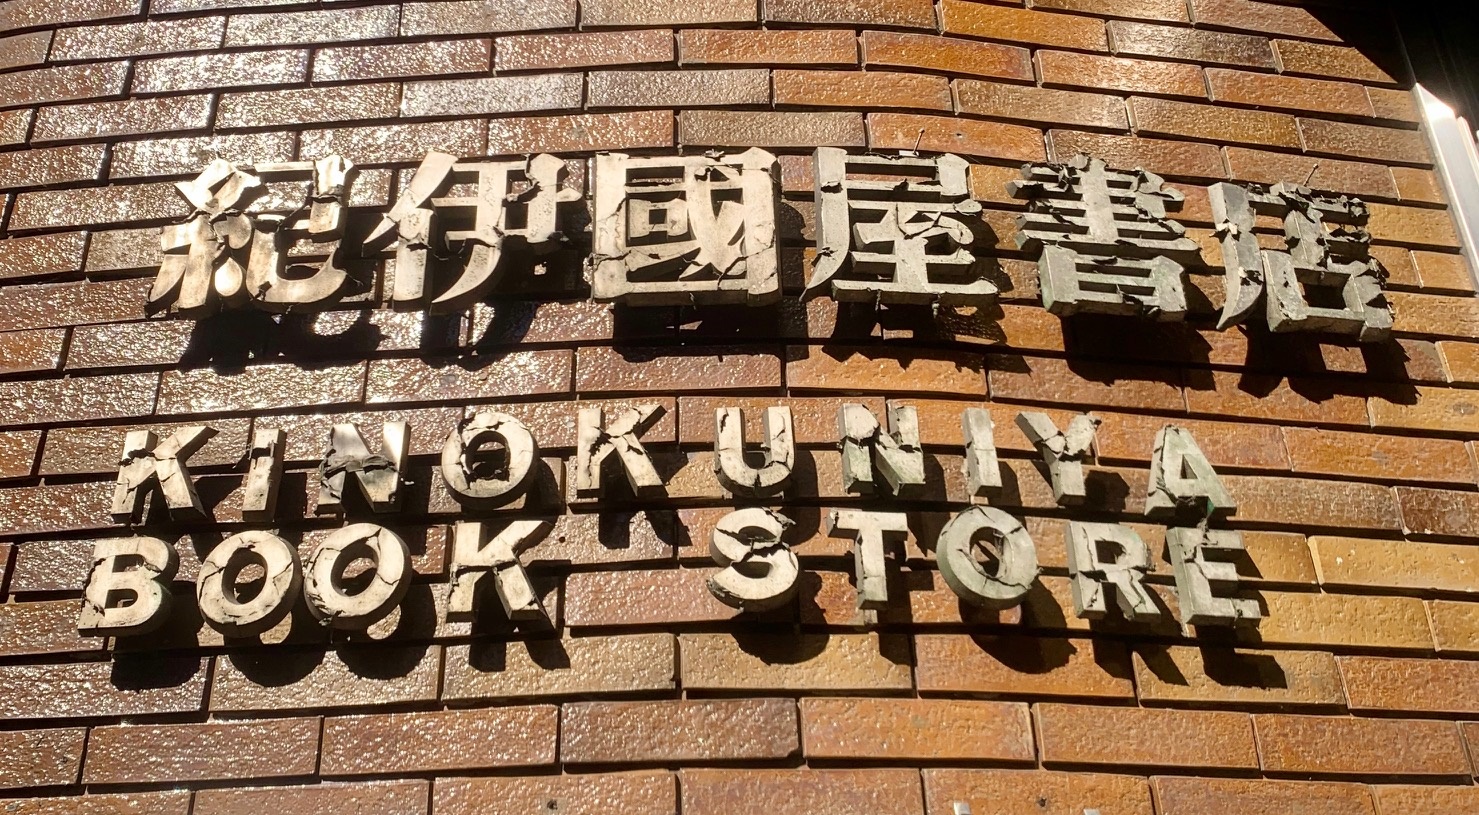 紀伊國屋書店 新宿本店